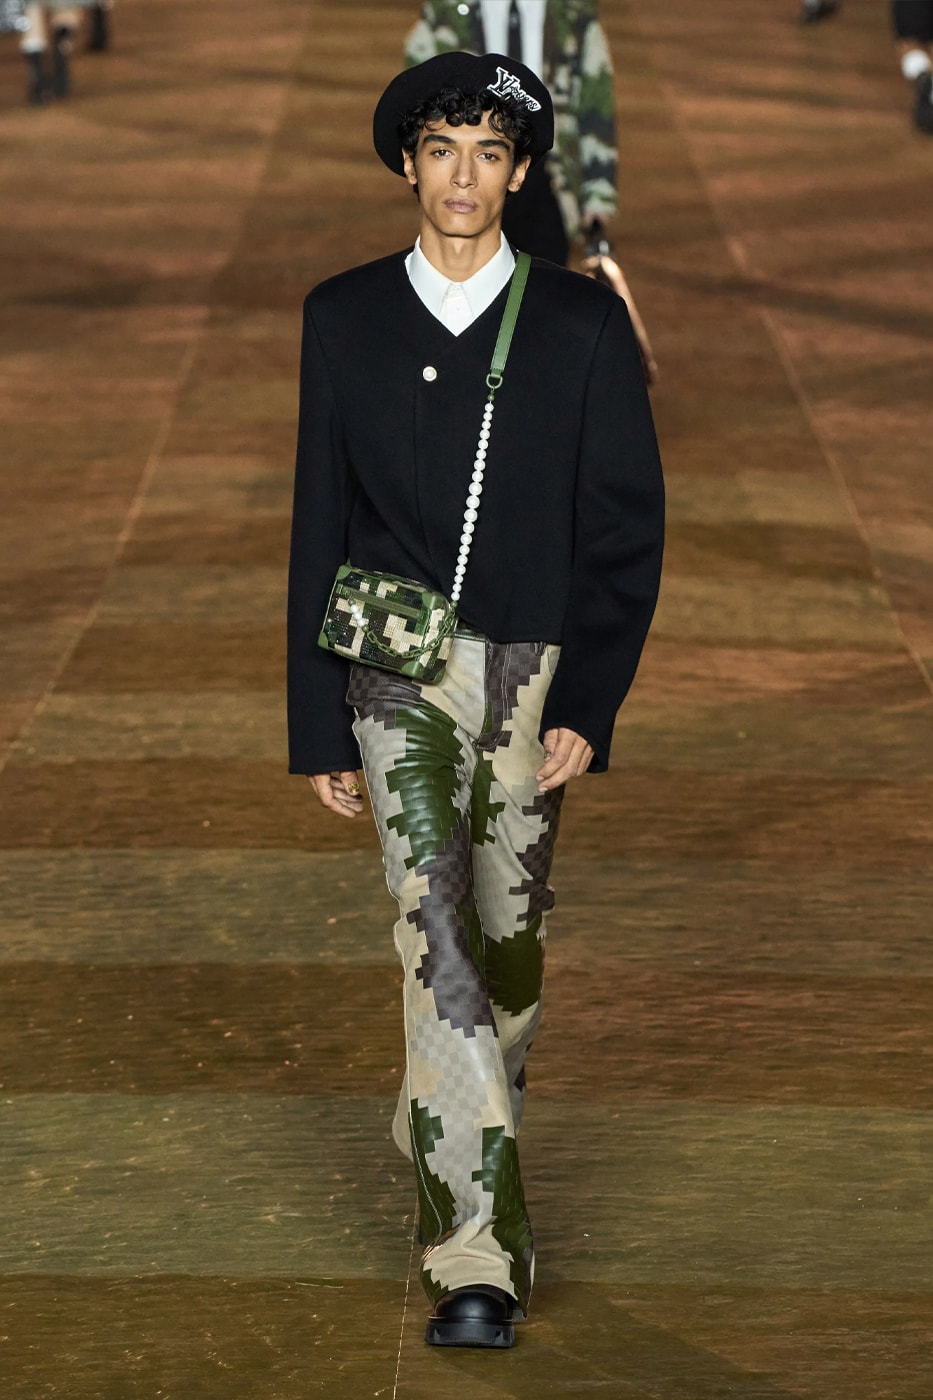 Paris Fashion Week: Zendaya's Printed Single Sleeve Louis Vuitton